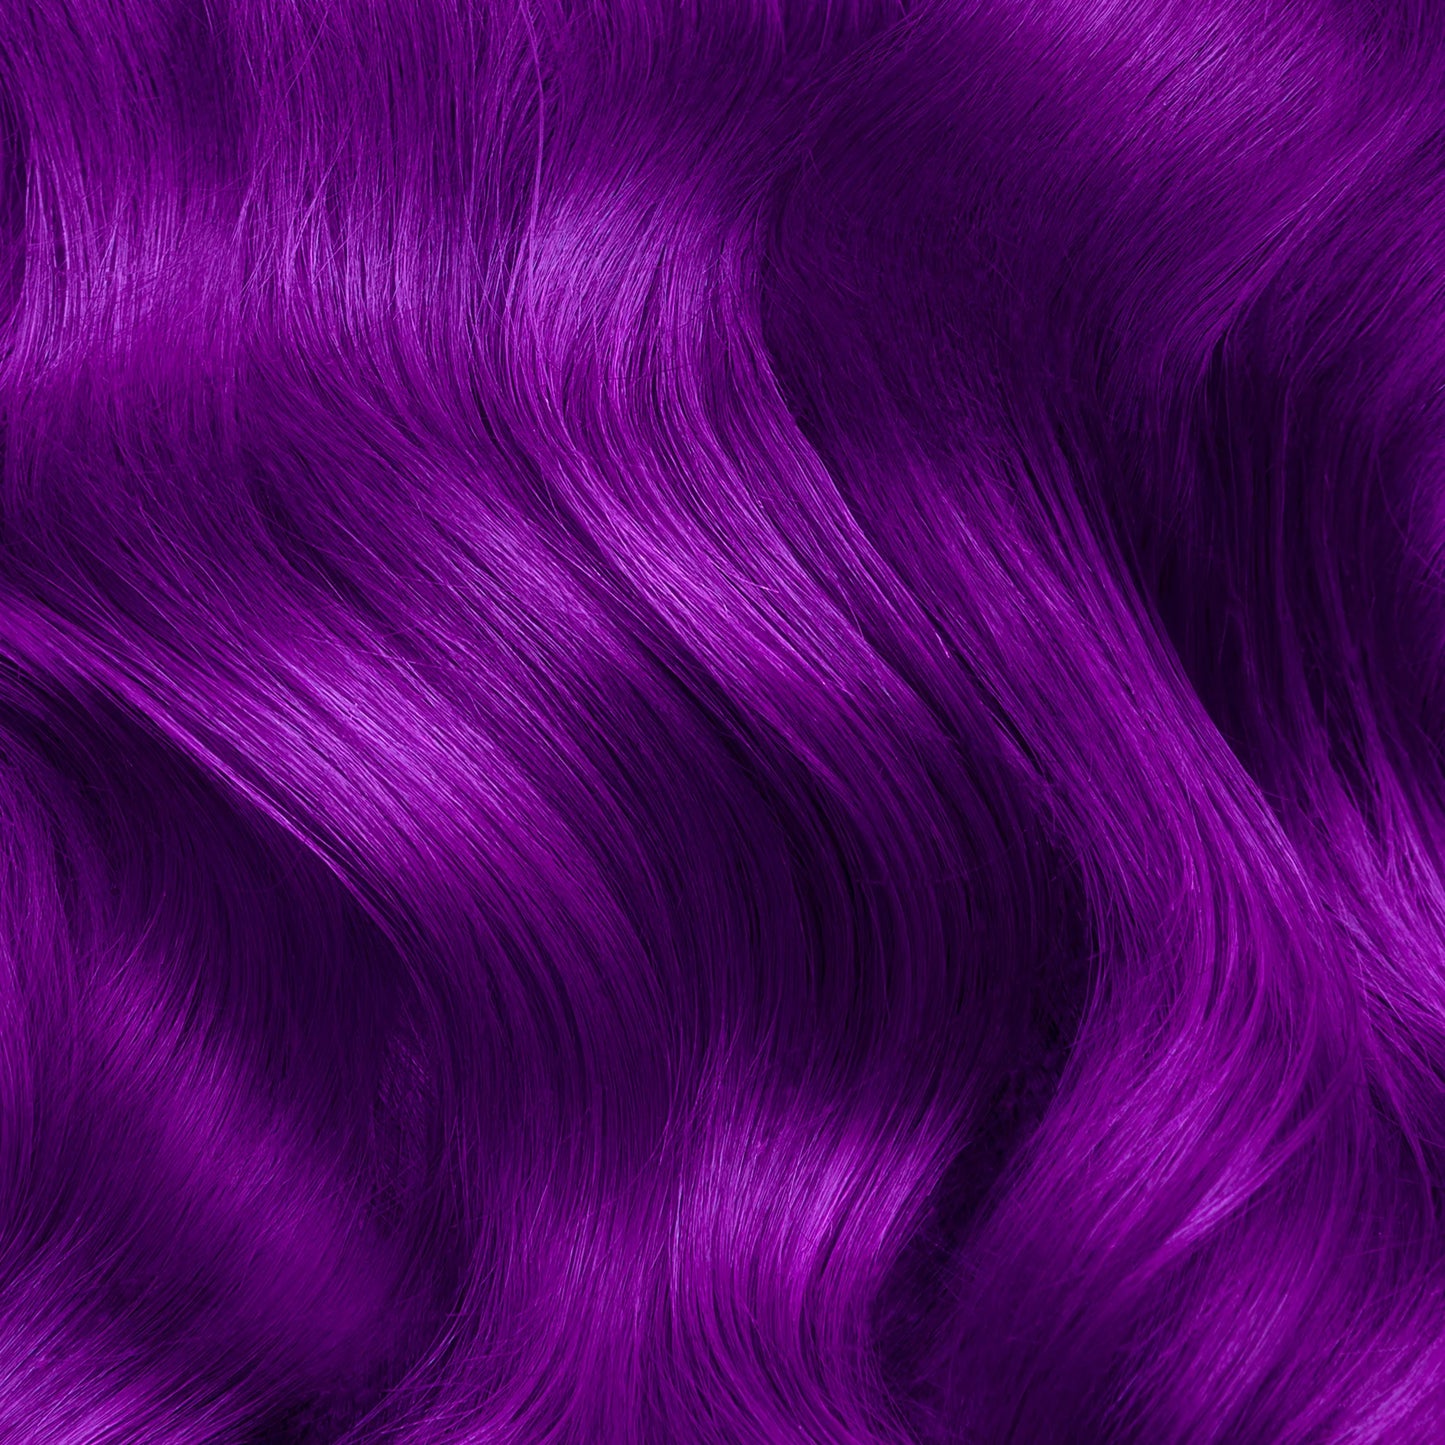 PLUM PURPLE Hair Dye Lunar Tides